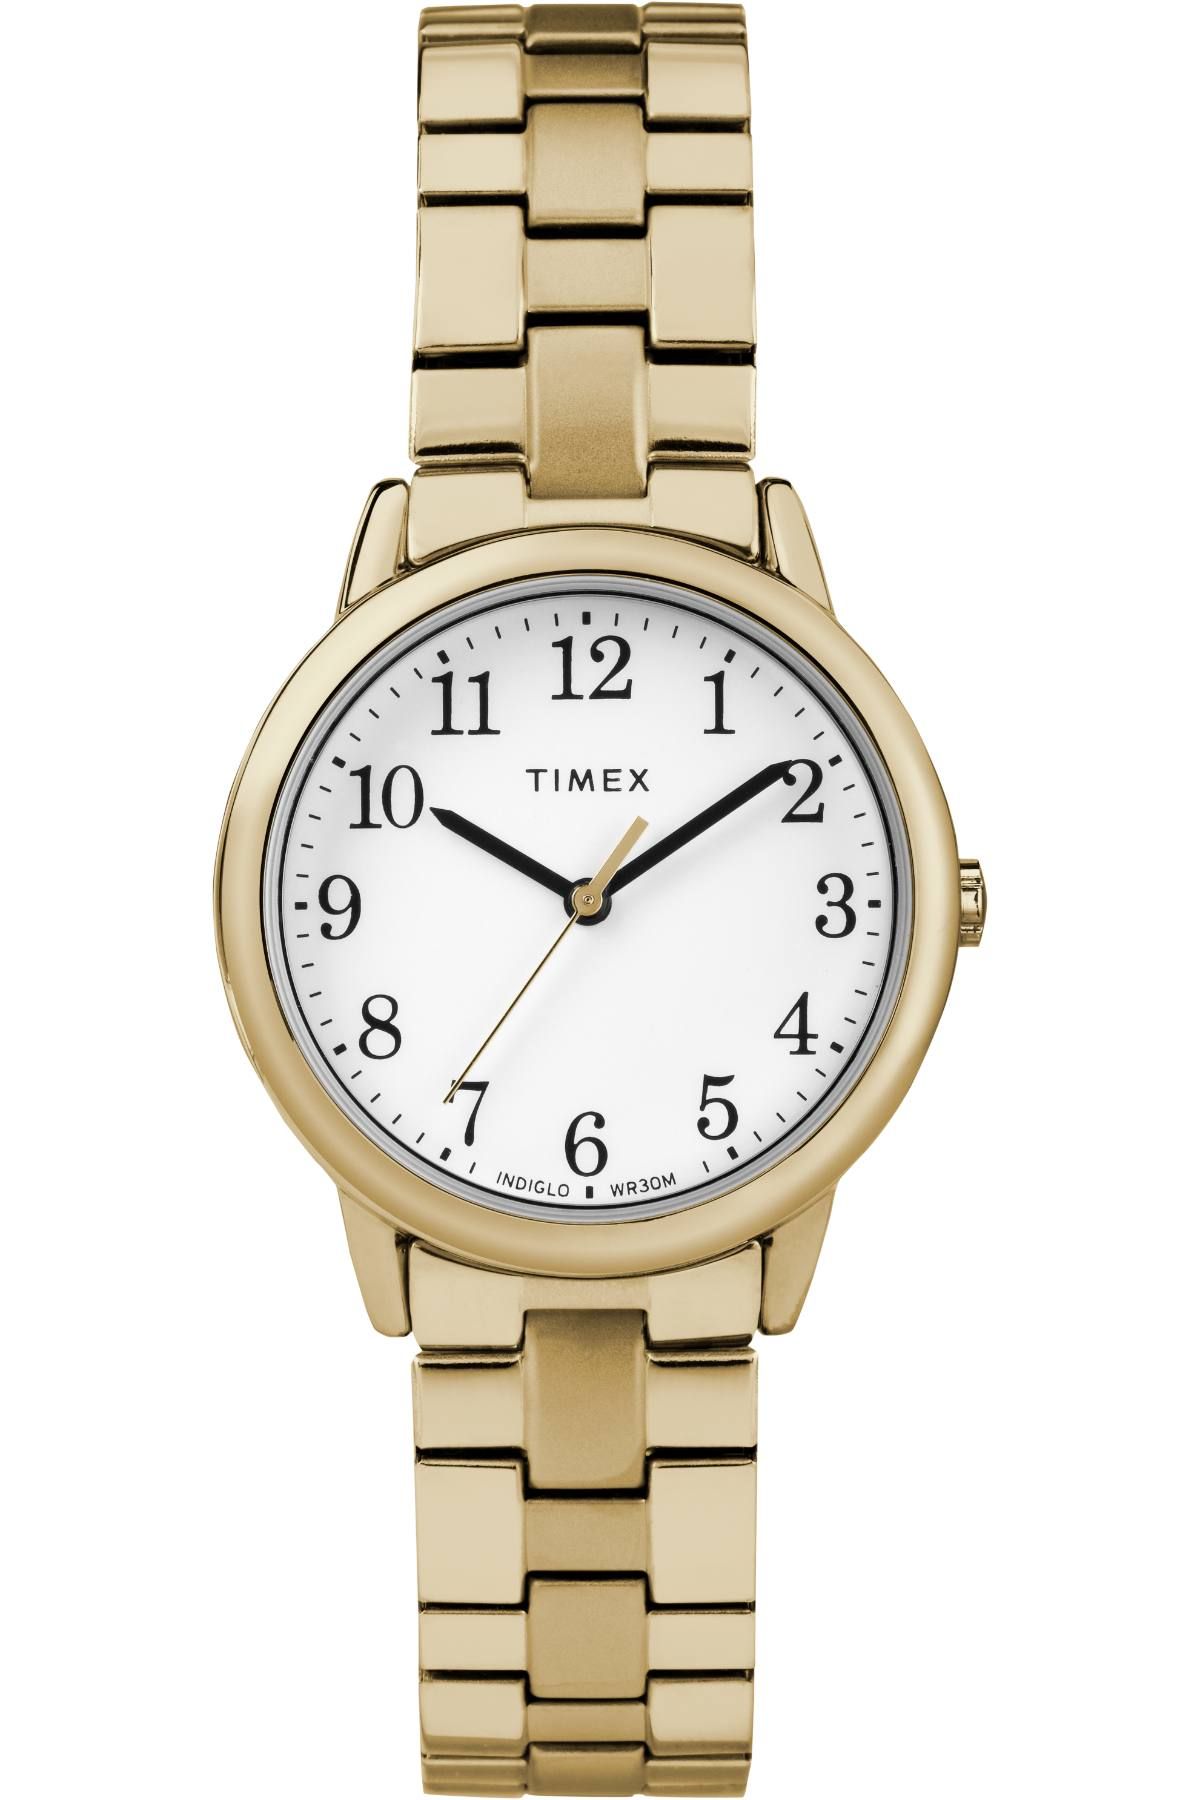 TIMEX TW2R58900 Watch